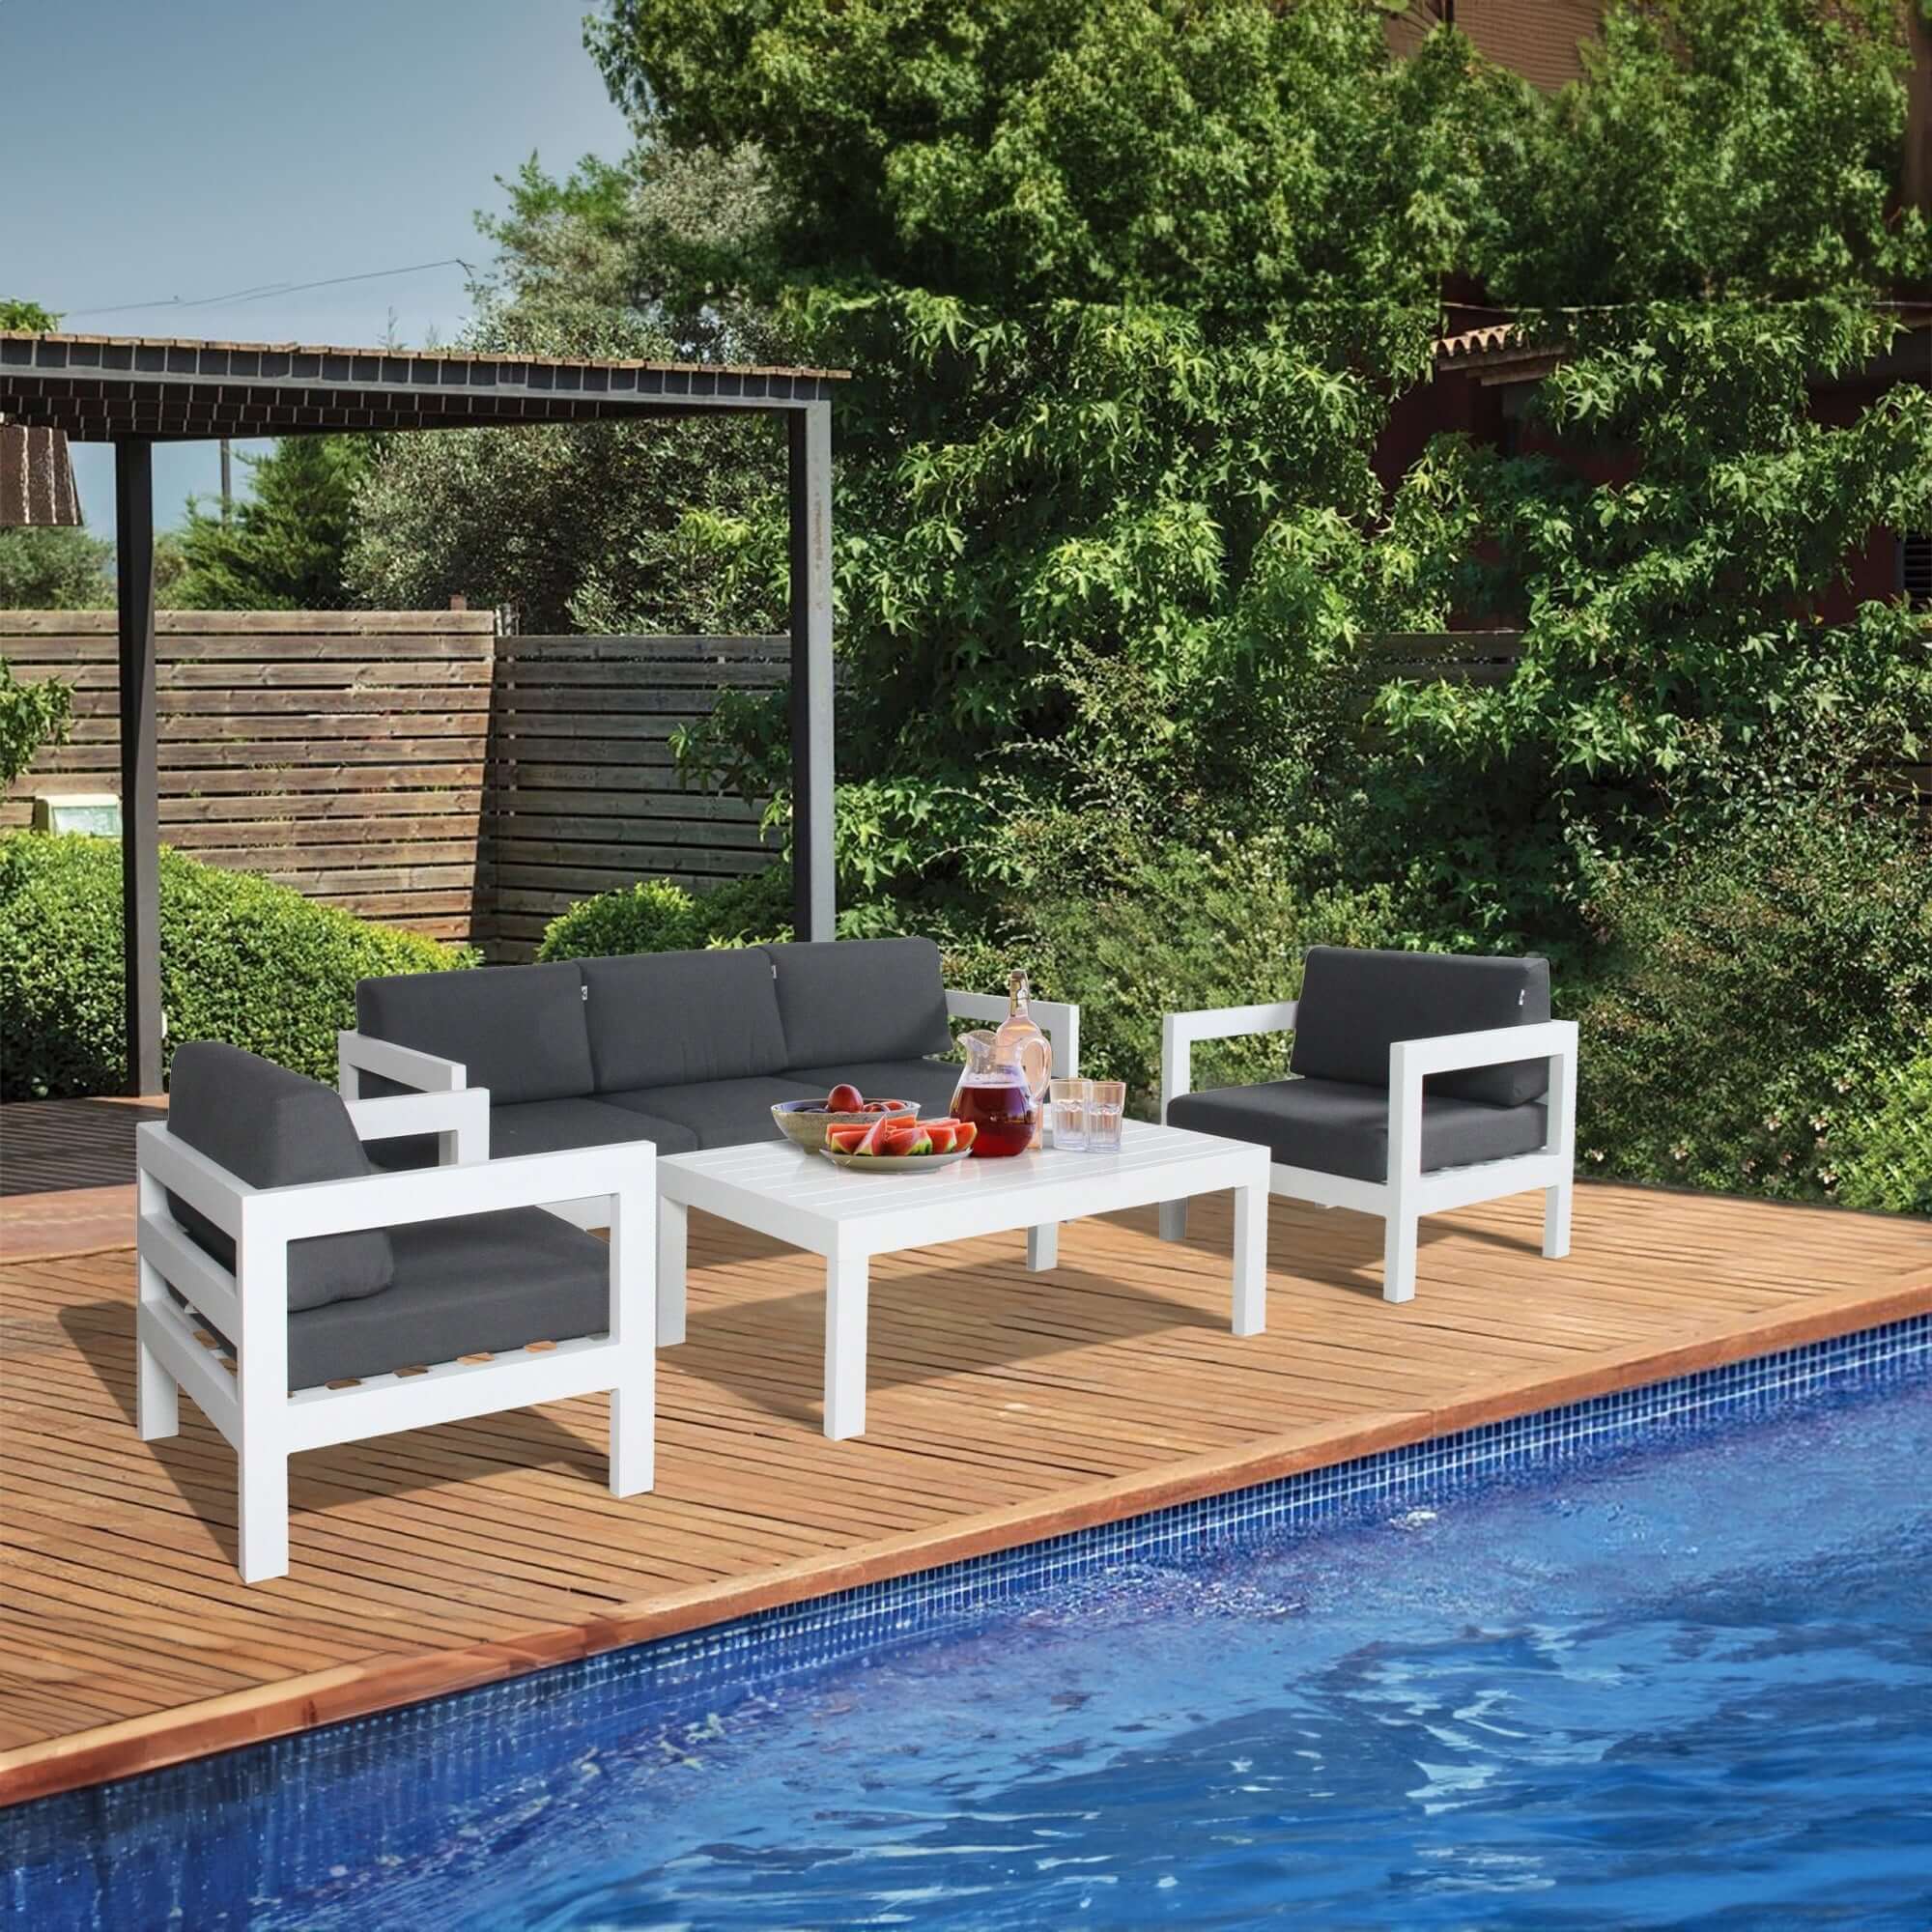 Outie 2pc Outdoor Sofa Set | Aluminium Frame-Upinteriors